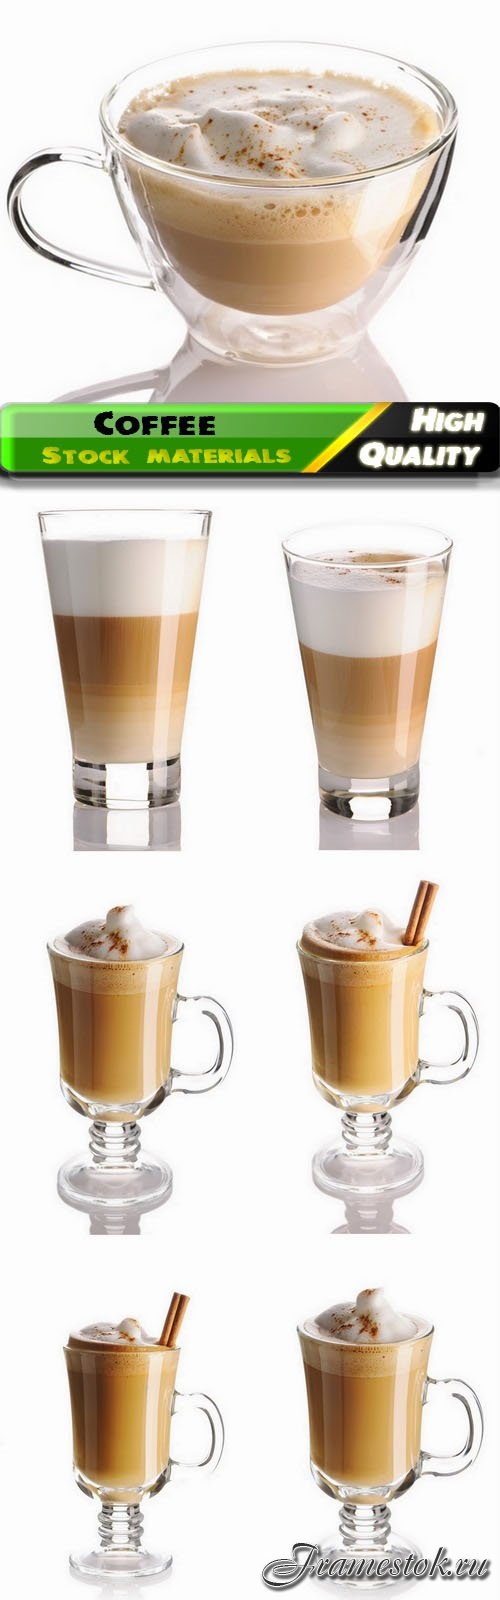 Coffee cappuccino mochaccino latte americano espresso 7 HQ Jpg